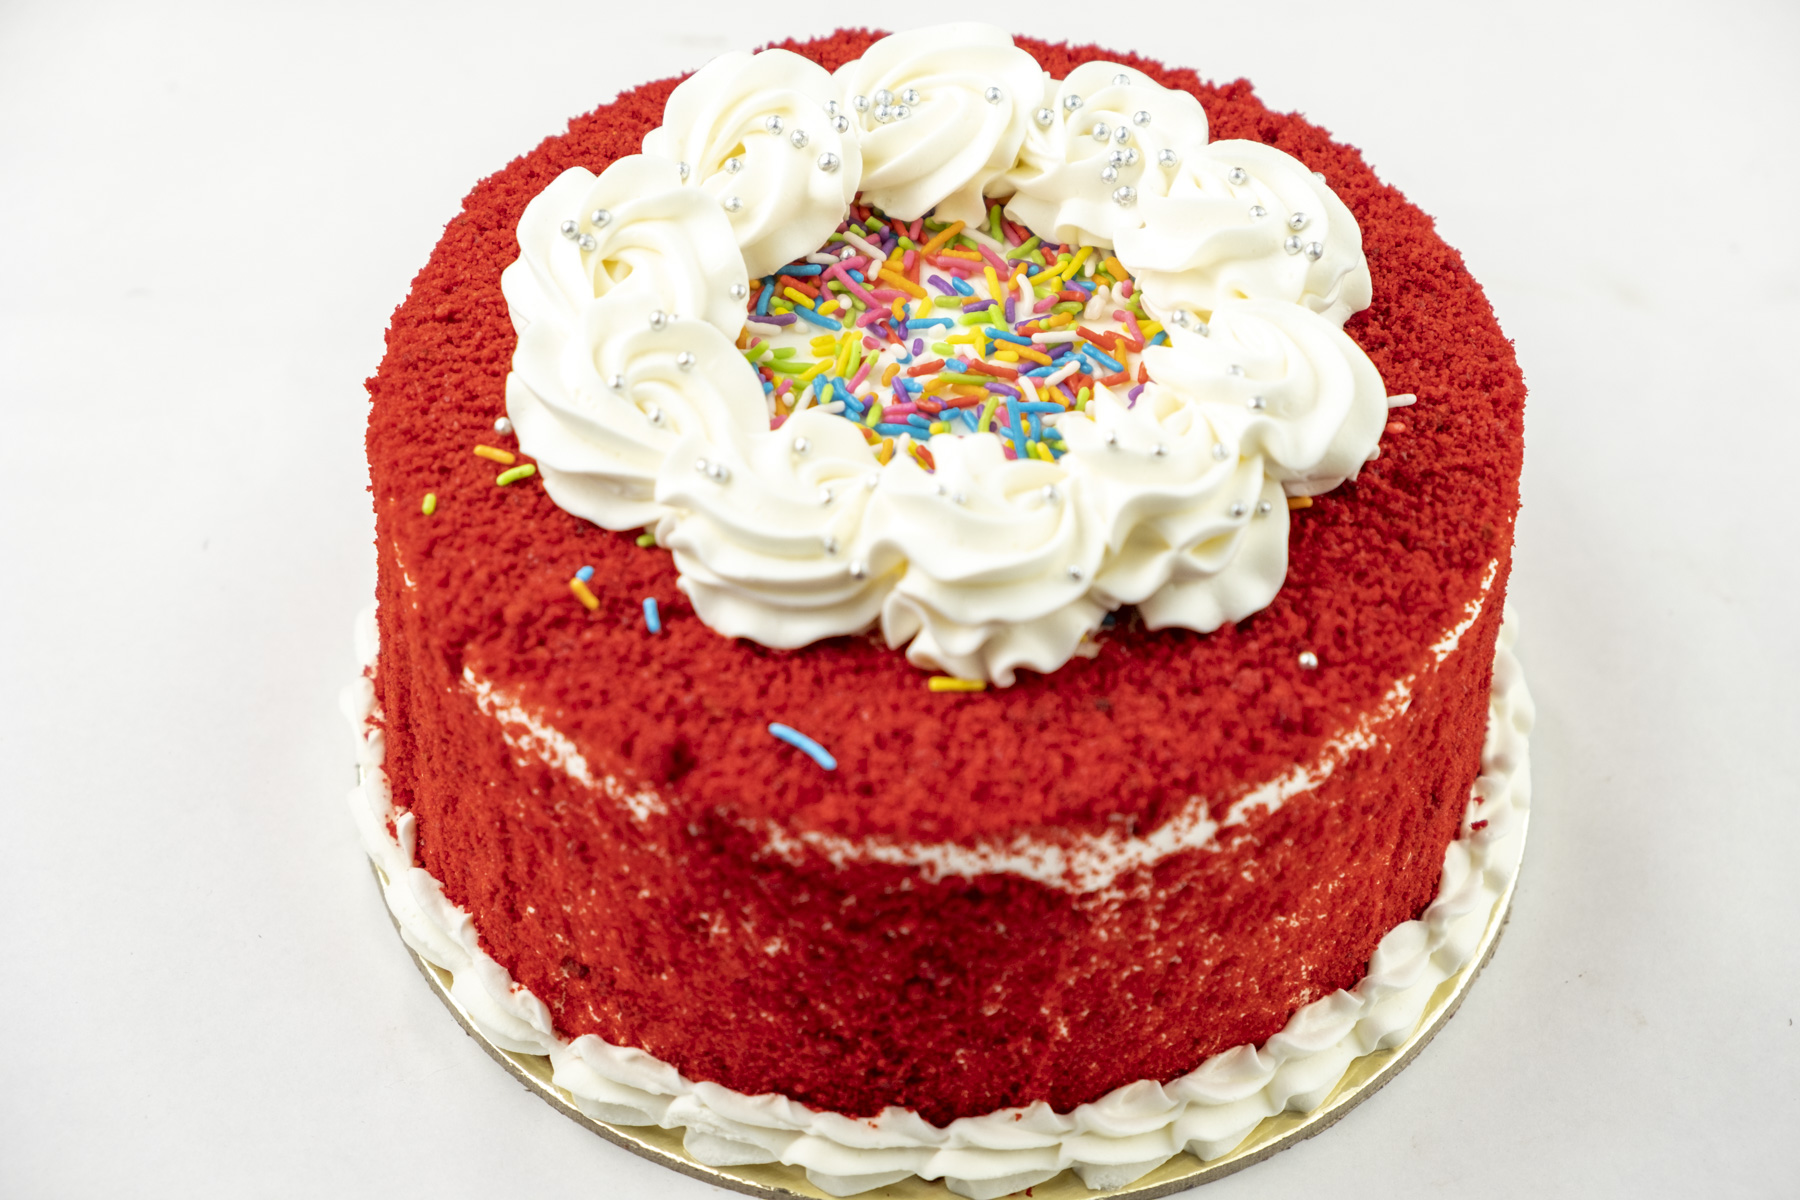 RED VELVET CHESSE CREAM CAKE